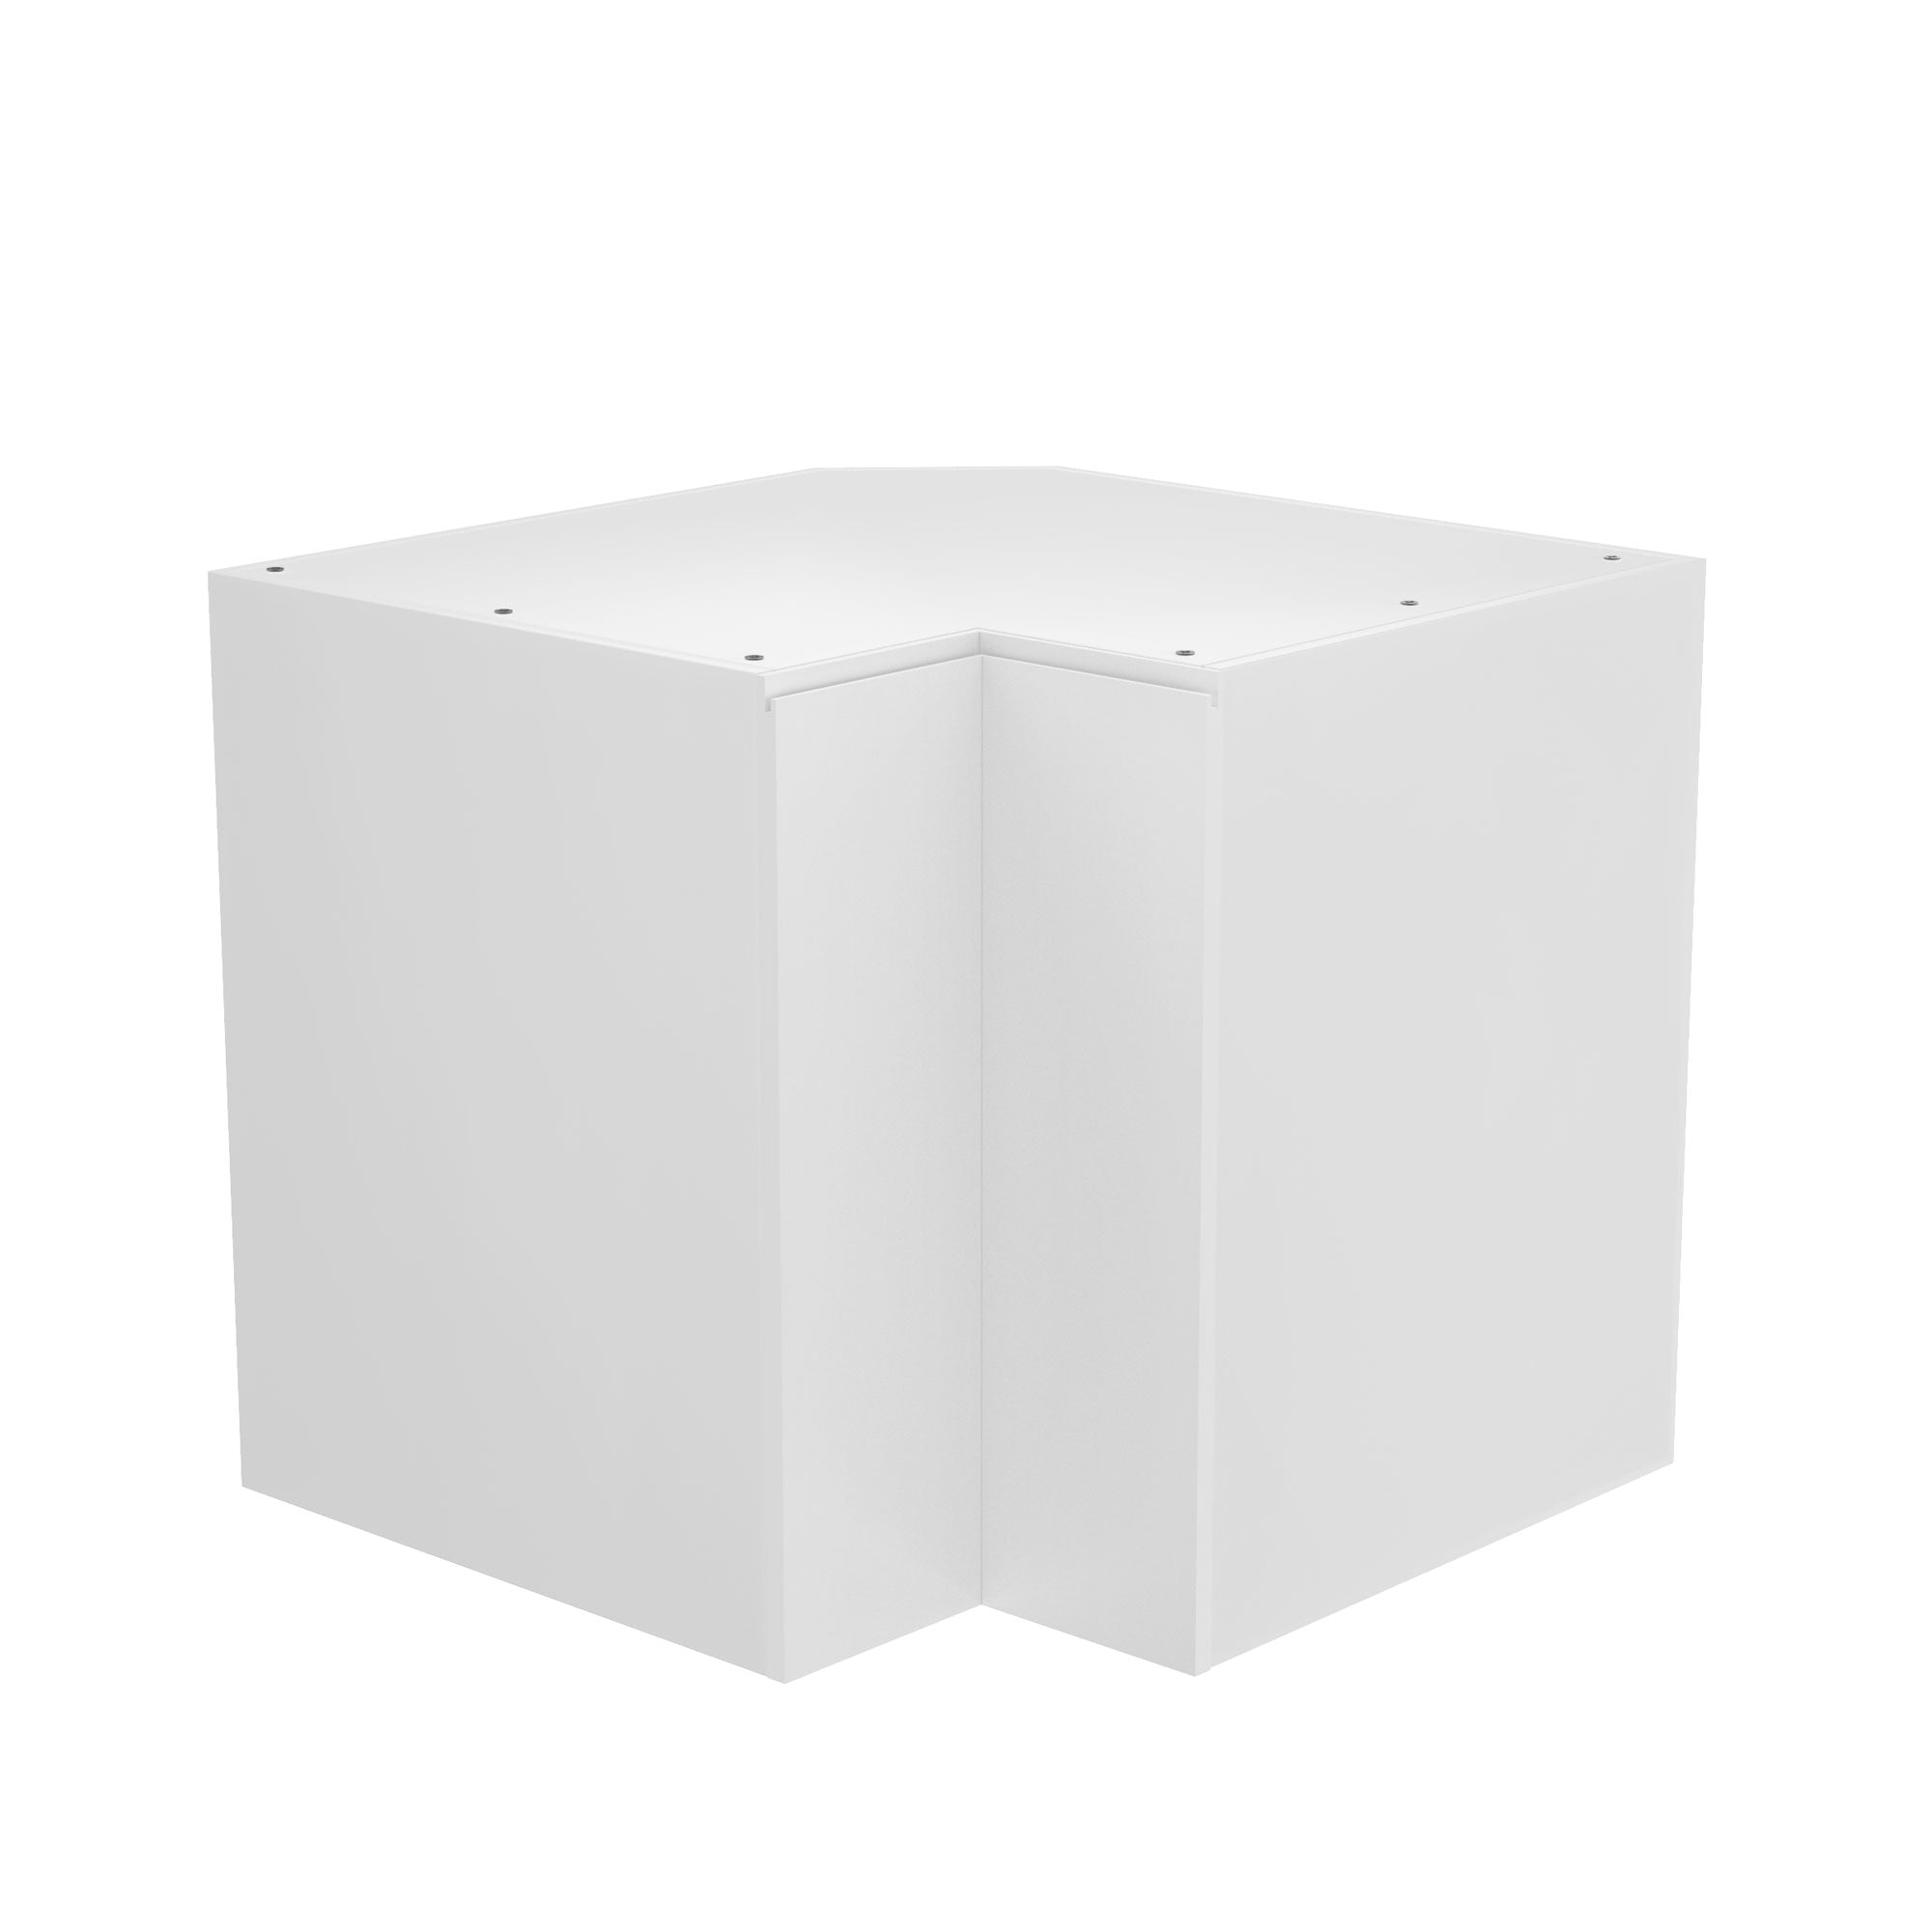 RTA Lazy Susan Kitchen Cabinet - Lacquer White | 36"W x 34.5"H x 23.8"D